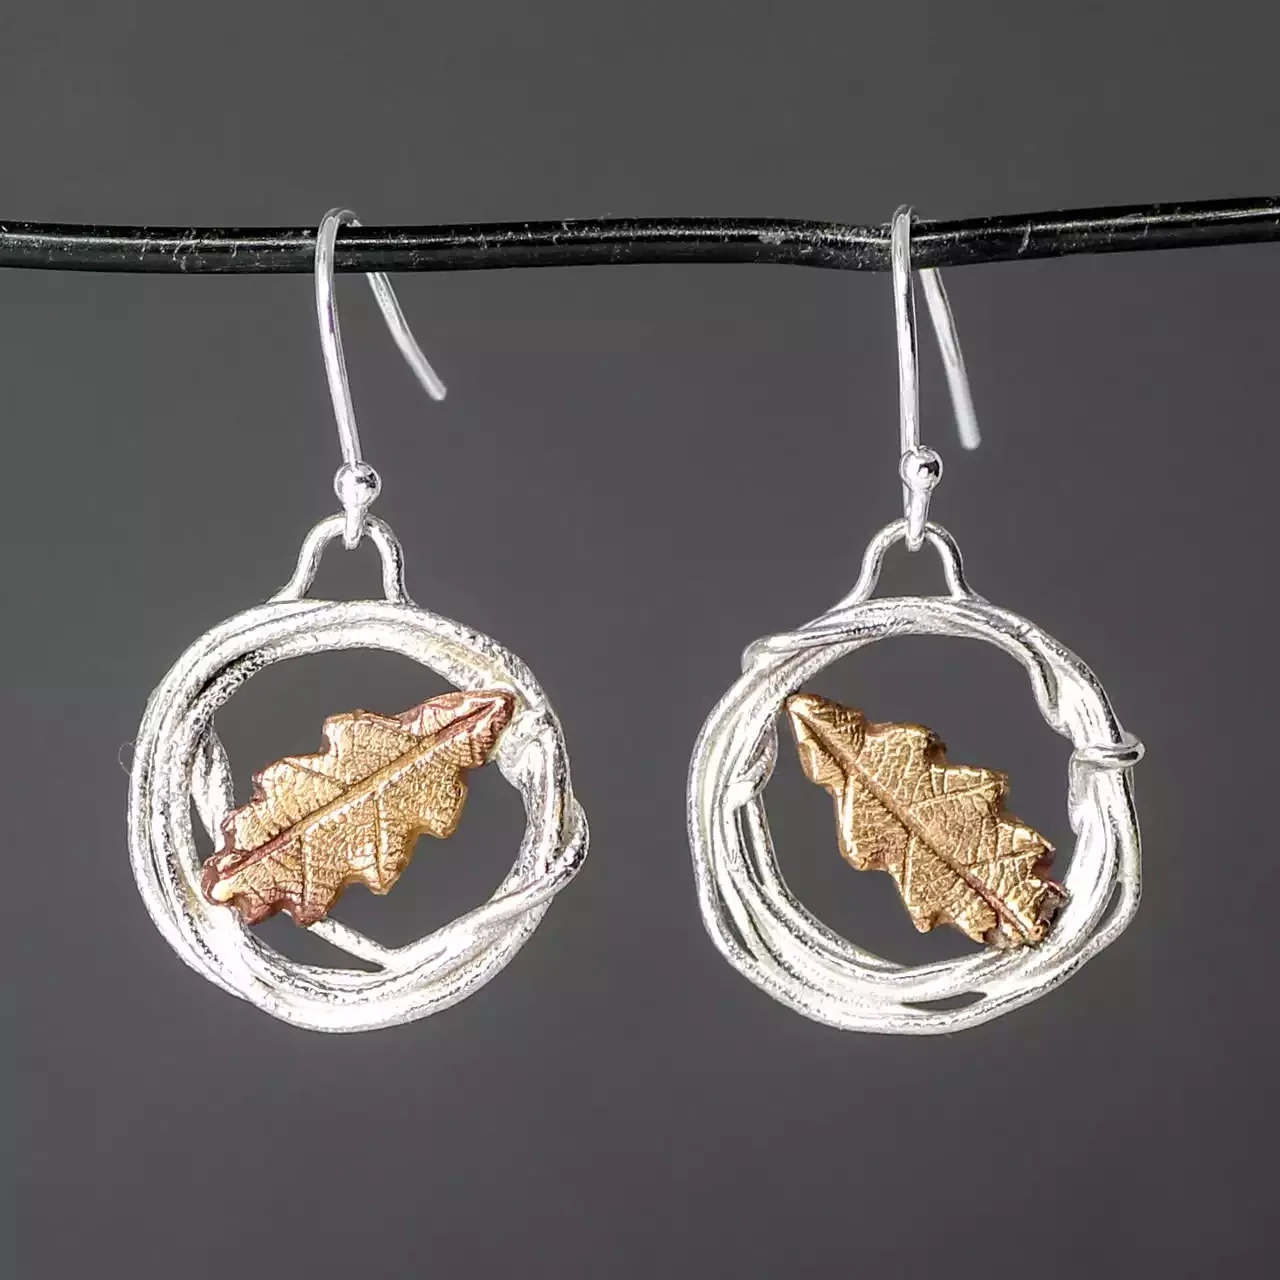 Oak Leaf in Hoop Silver and Bronze Earrings by Xuella Arnold